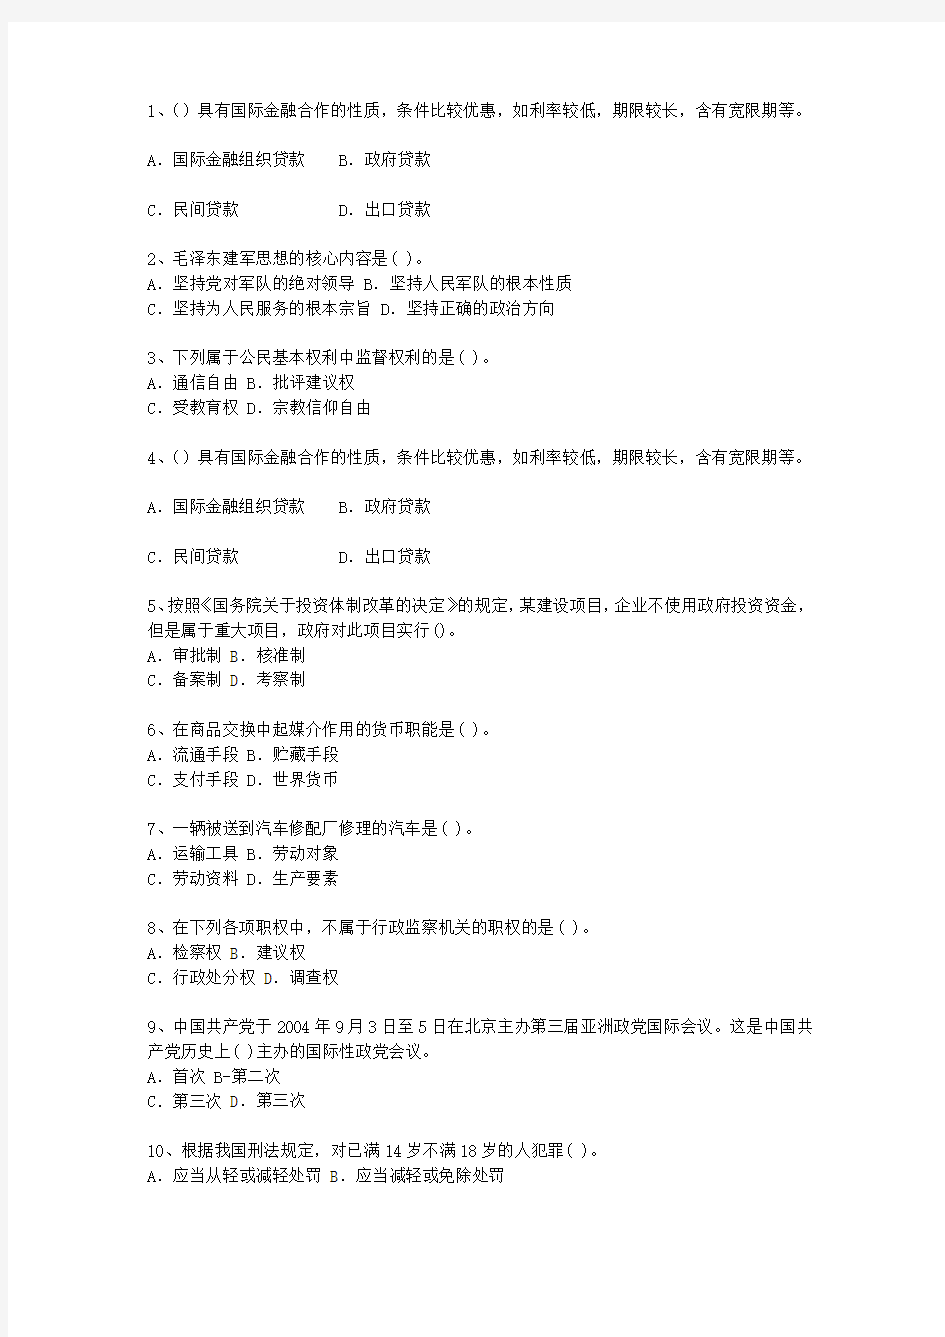 2013广东省公开选拔镇副科级领导干部理论考试试题及答案